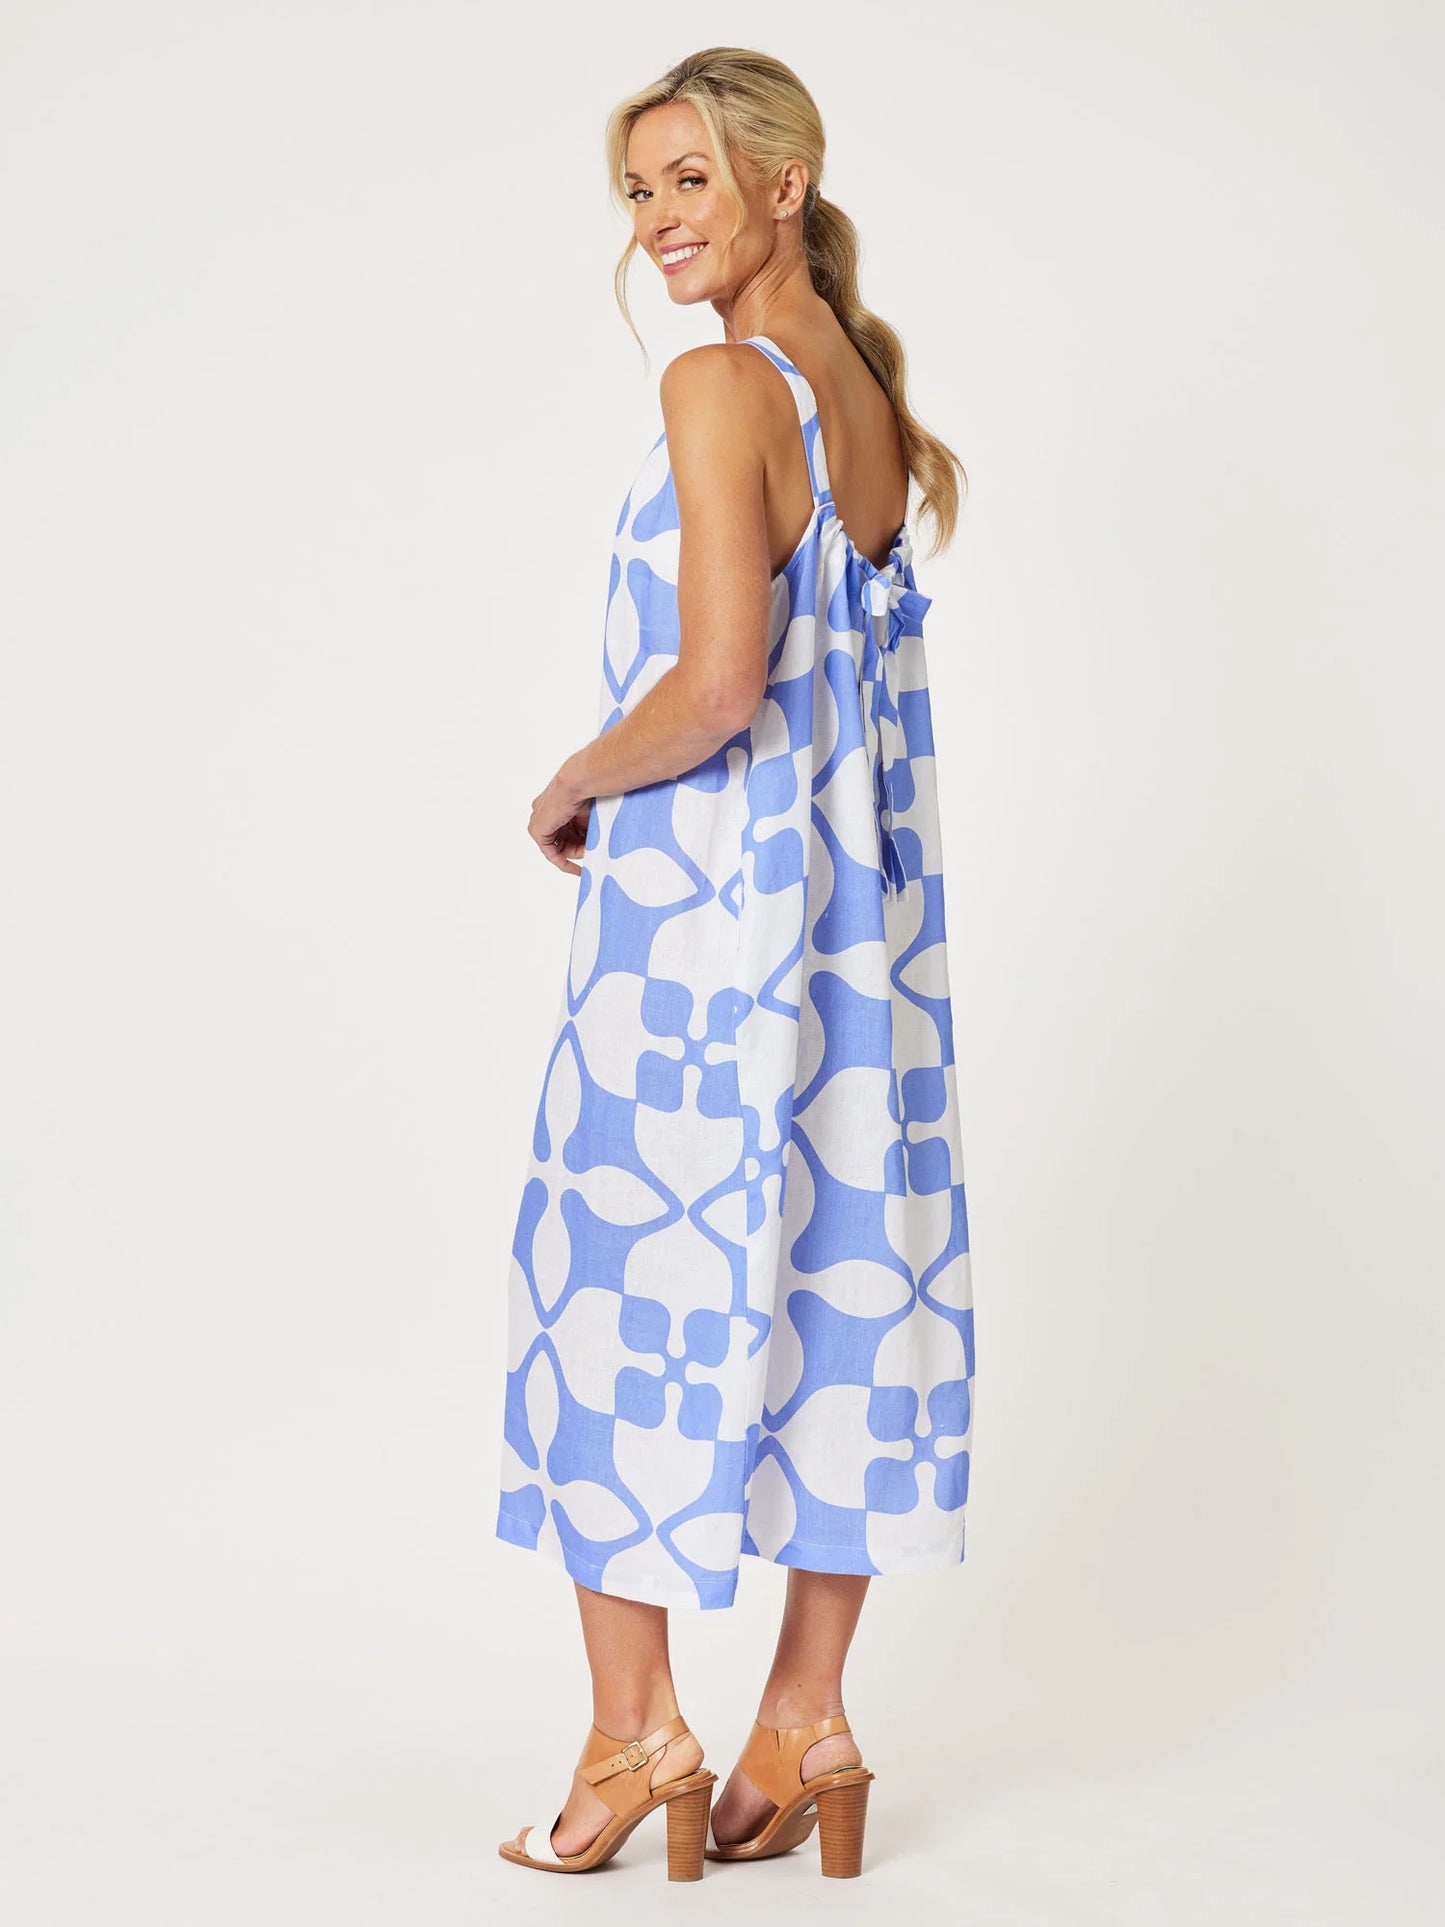 Pantile Print Dress - Blue